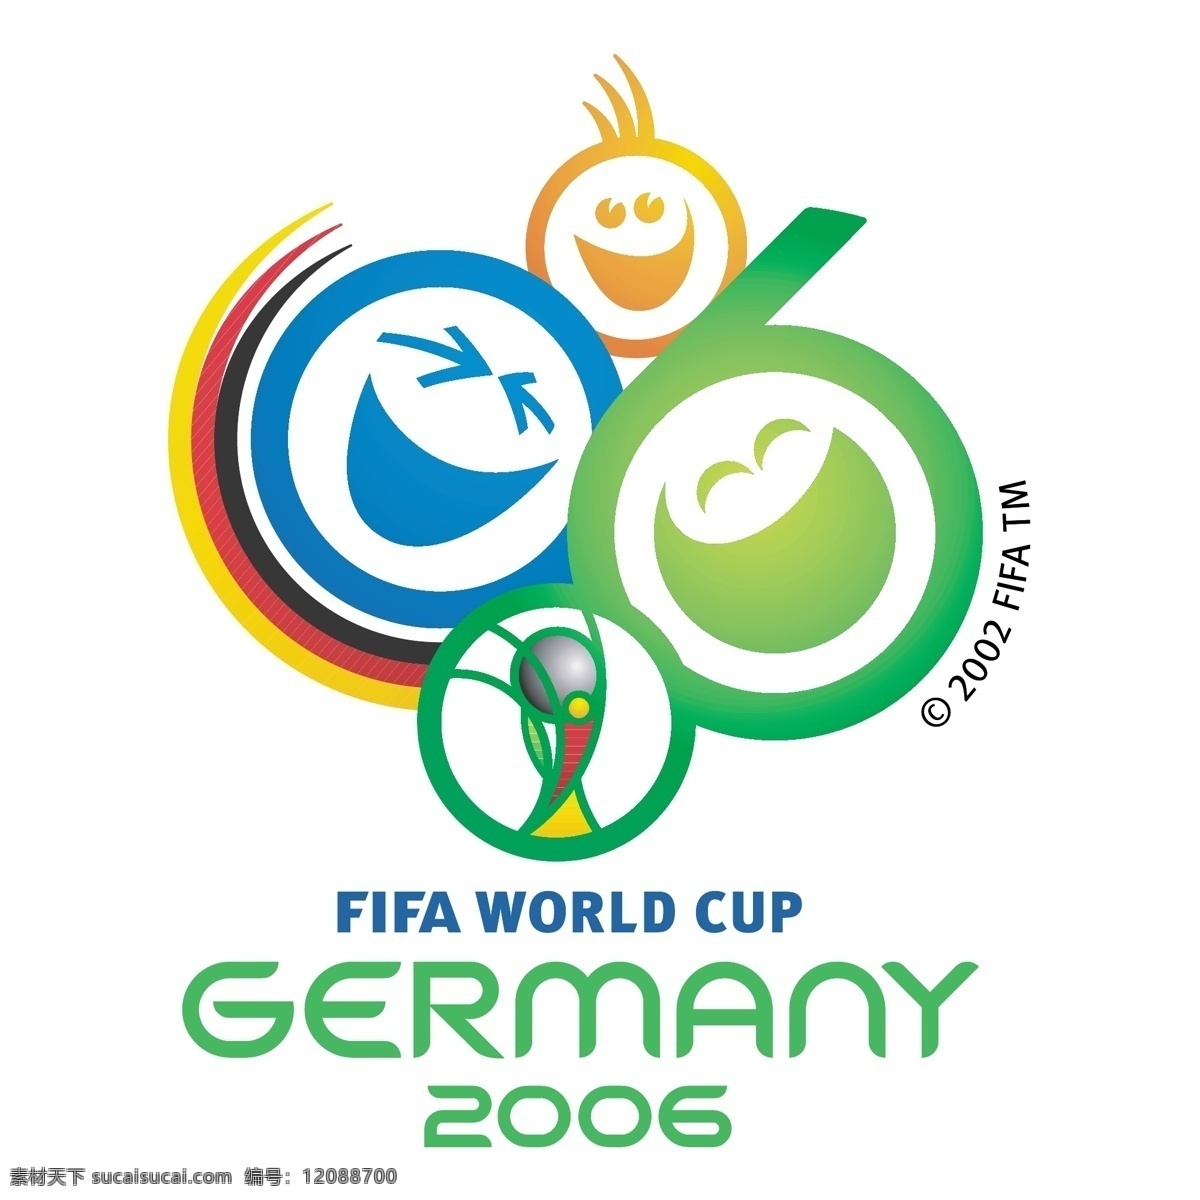 2006 世界杯 国际足联 世界 矢量图 其他矢量图